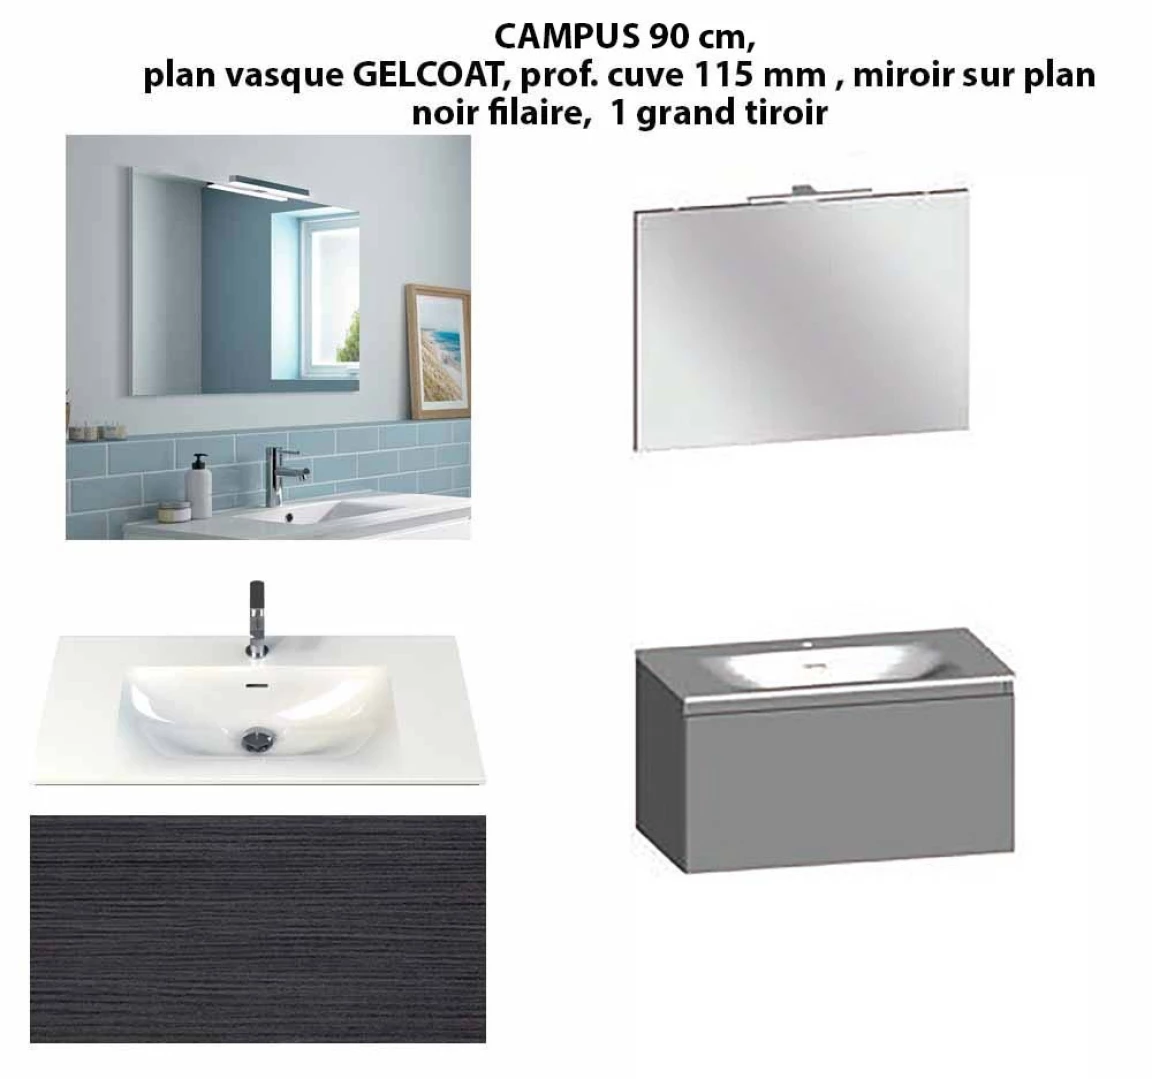 Ensemble meuble de salle de bain CAMPUS 90 cm, plan vasque GELCOAT, prof. cuve 115 mm, miroir hauteur 60 cm, noir filaire, 1 grand tiroir